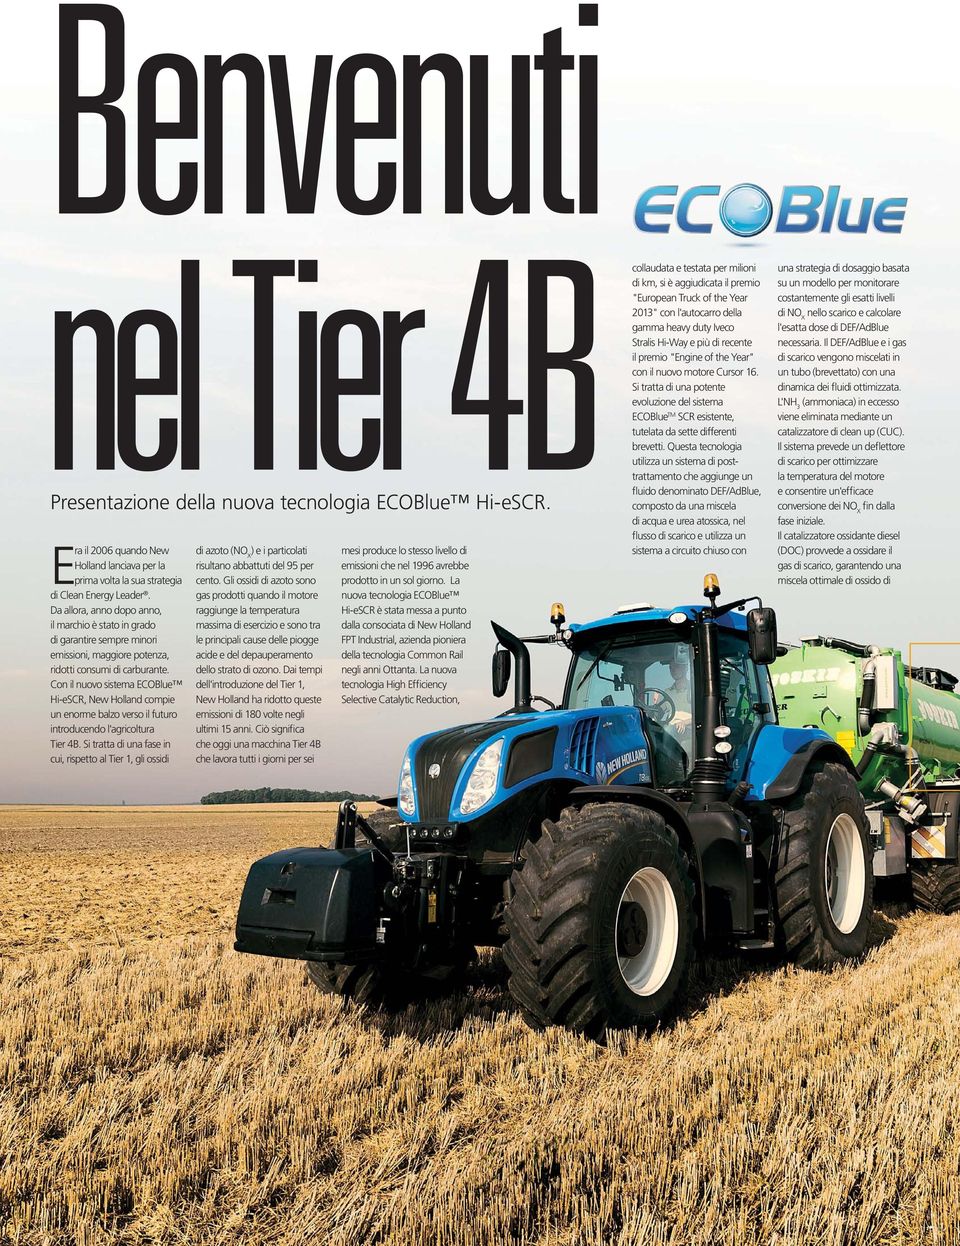 Con il nuovo sistema ECOBlue Hi-eSCR, New Holland compie un enorme balzo verso il futuro introducendo l'agricoltura Tier 4B.